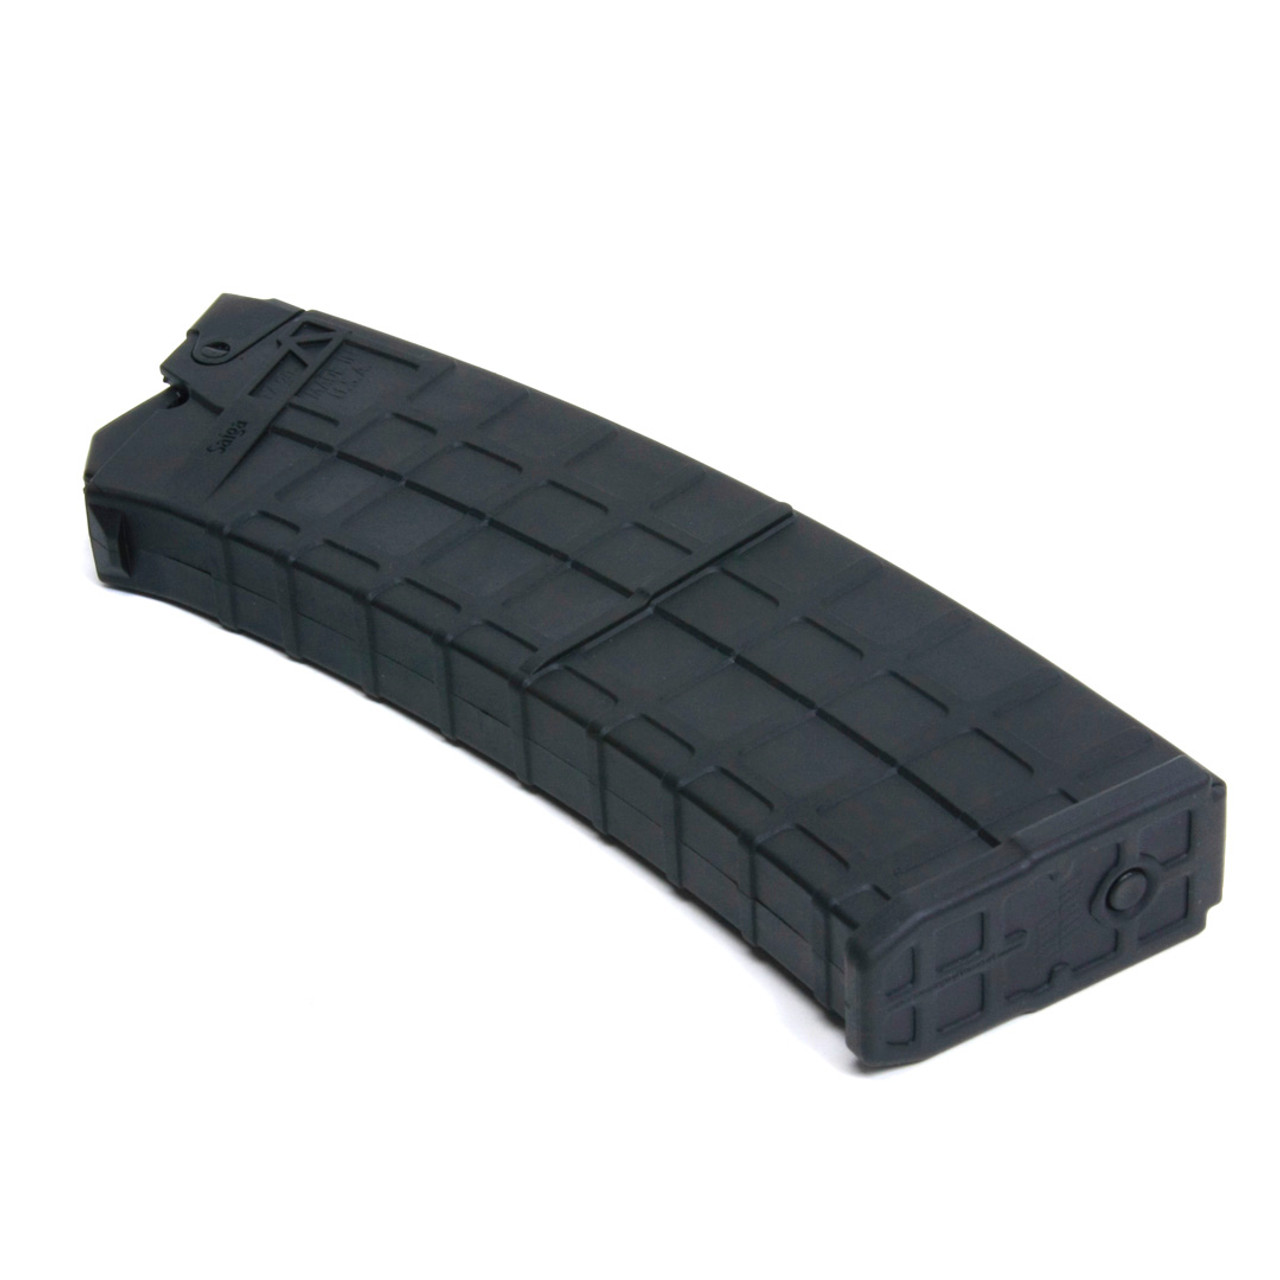 Saiga® 12 Gauge (10) Rd Box - Black Polymer